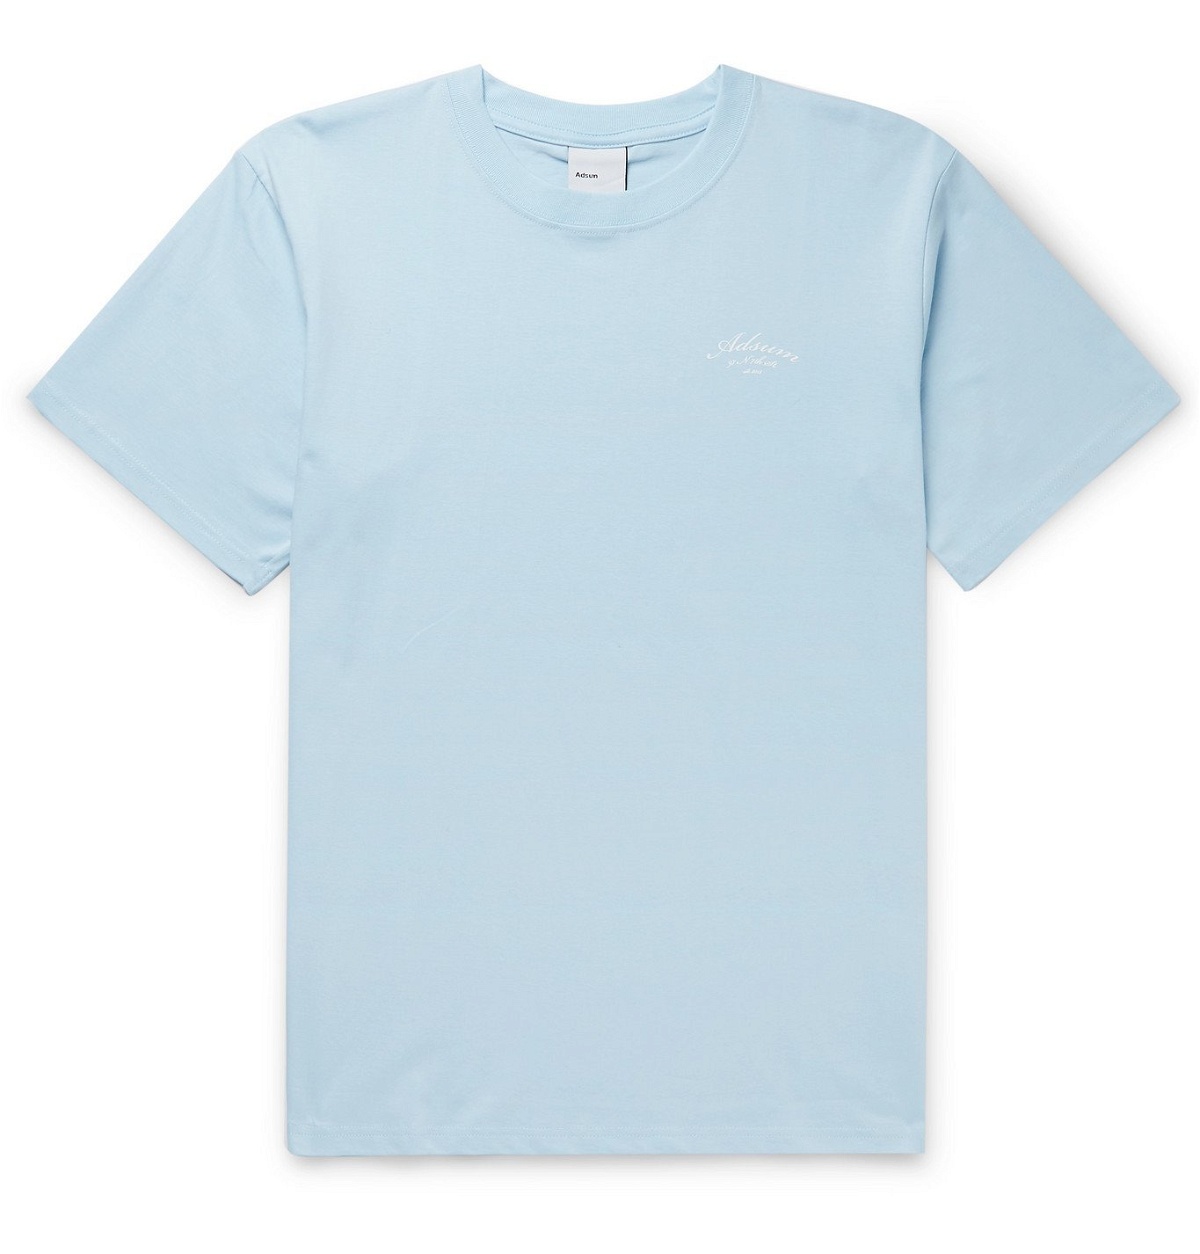 Adsum - Script Logo-Print Cotton-Jersey T-Shirt - Blue Adsum